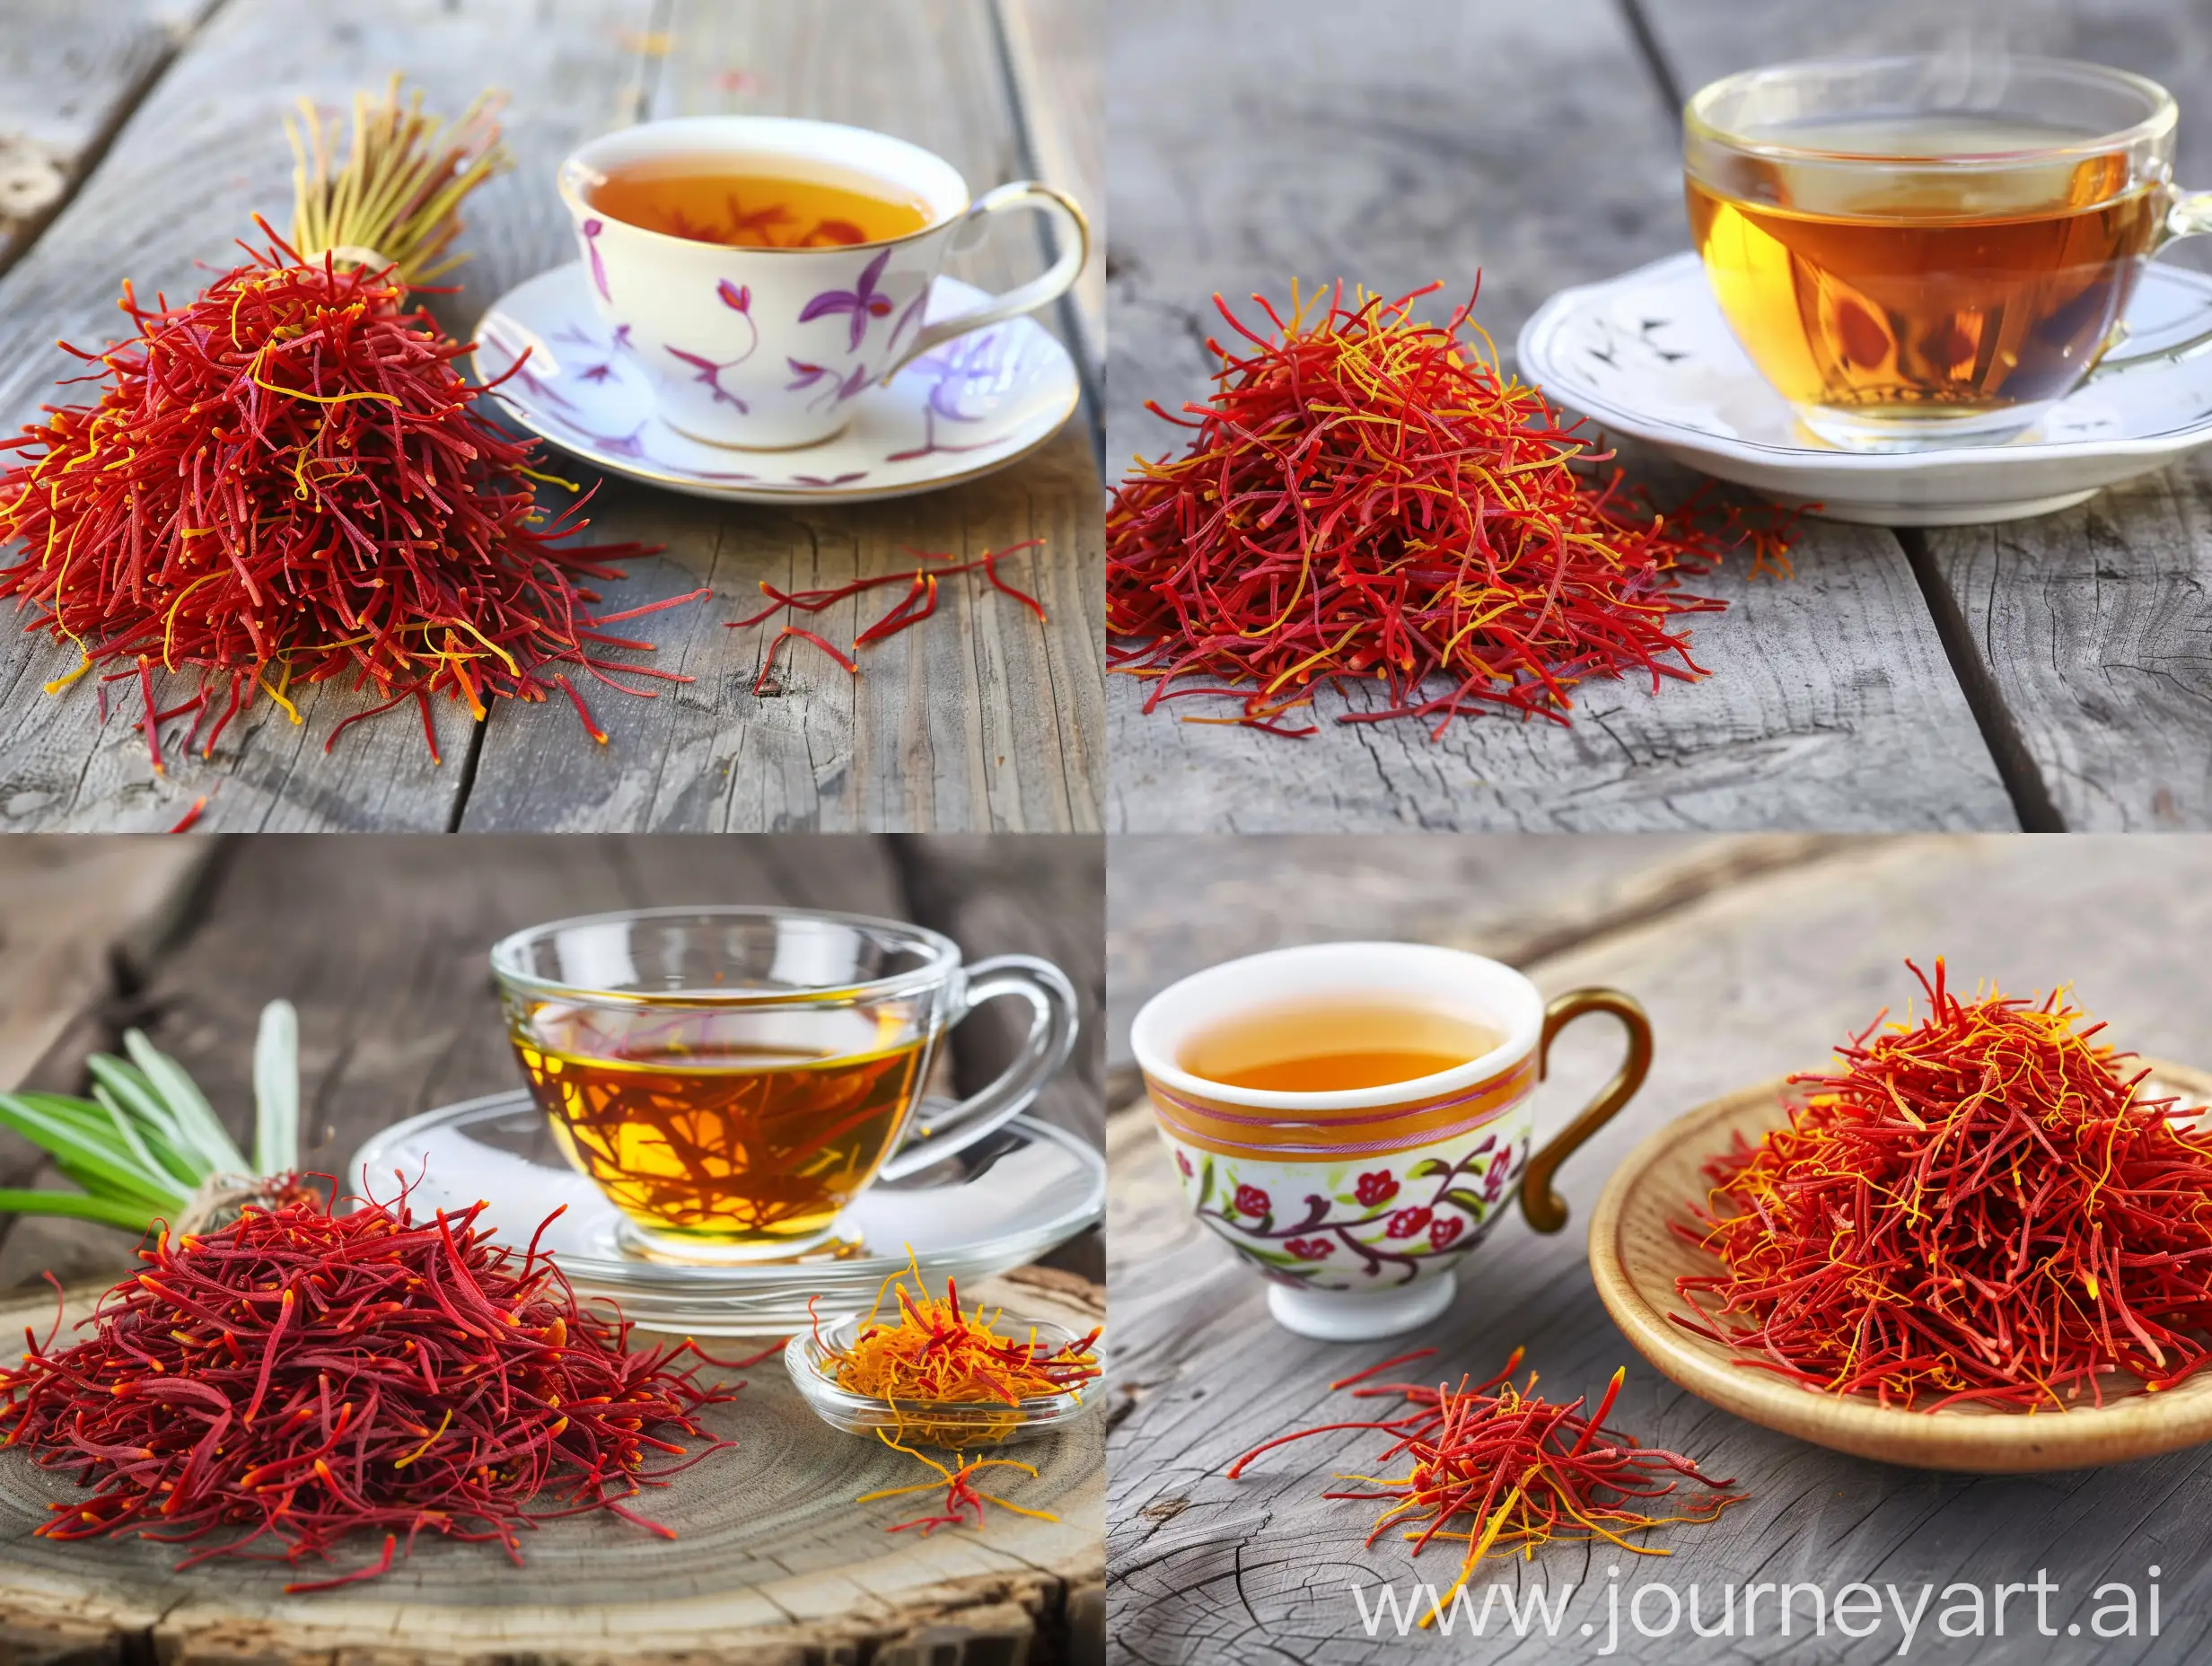 Saffron-Spice-Arrangement-with-Tea-Cup-on-Wooden-Table